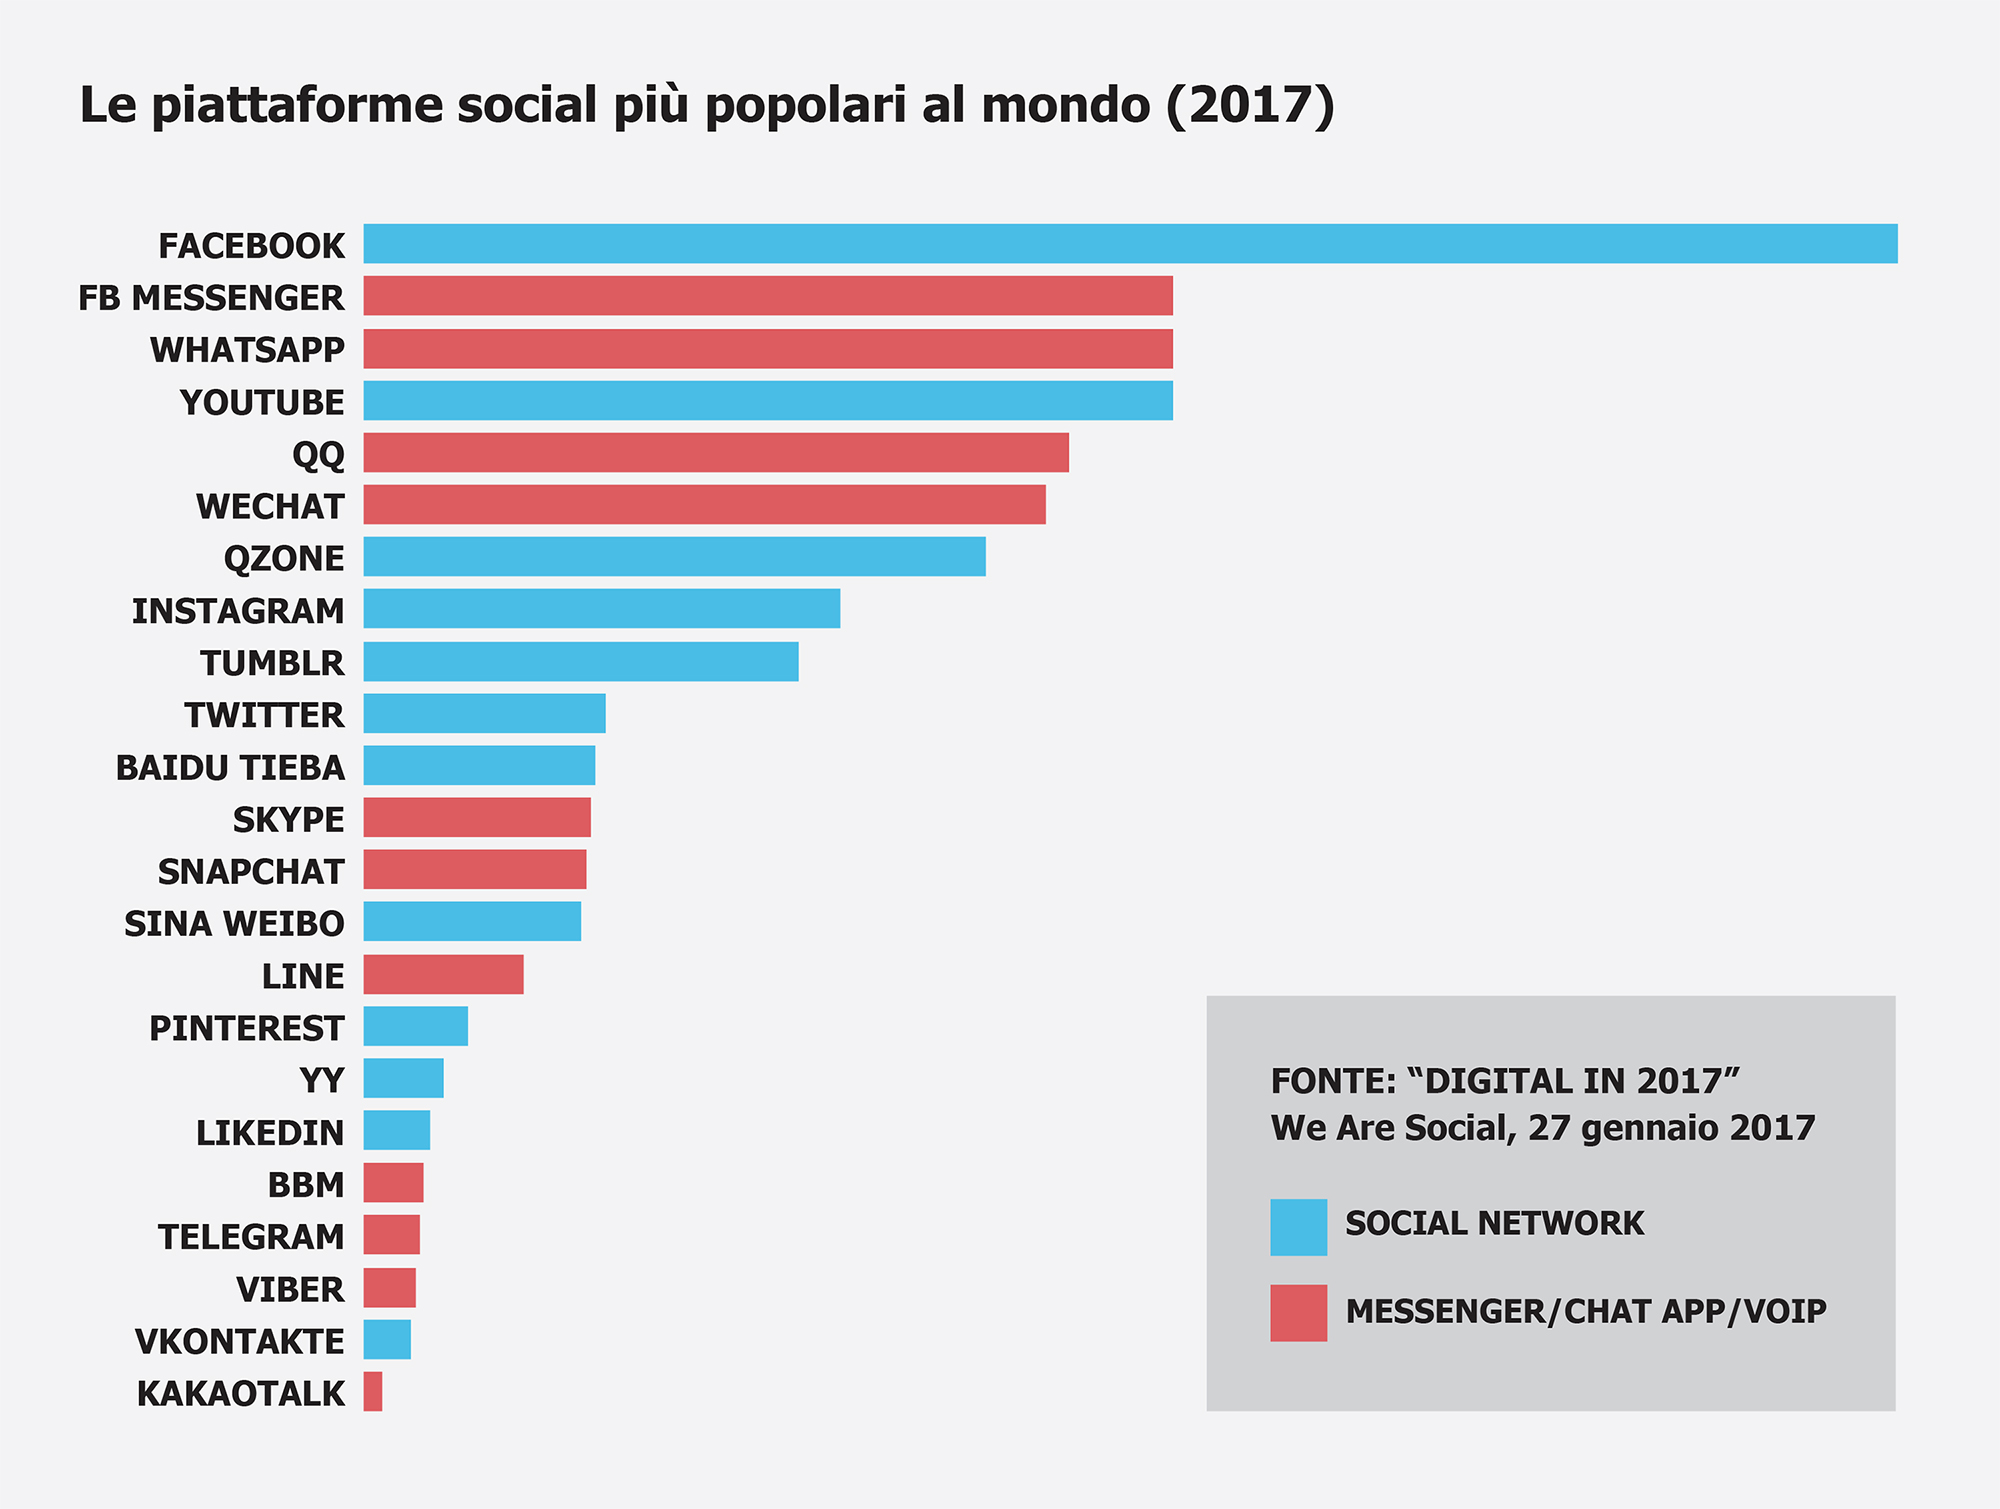 Classifica delle piattaforme social più popolari al mondo